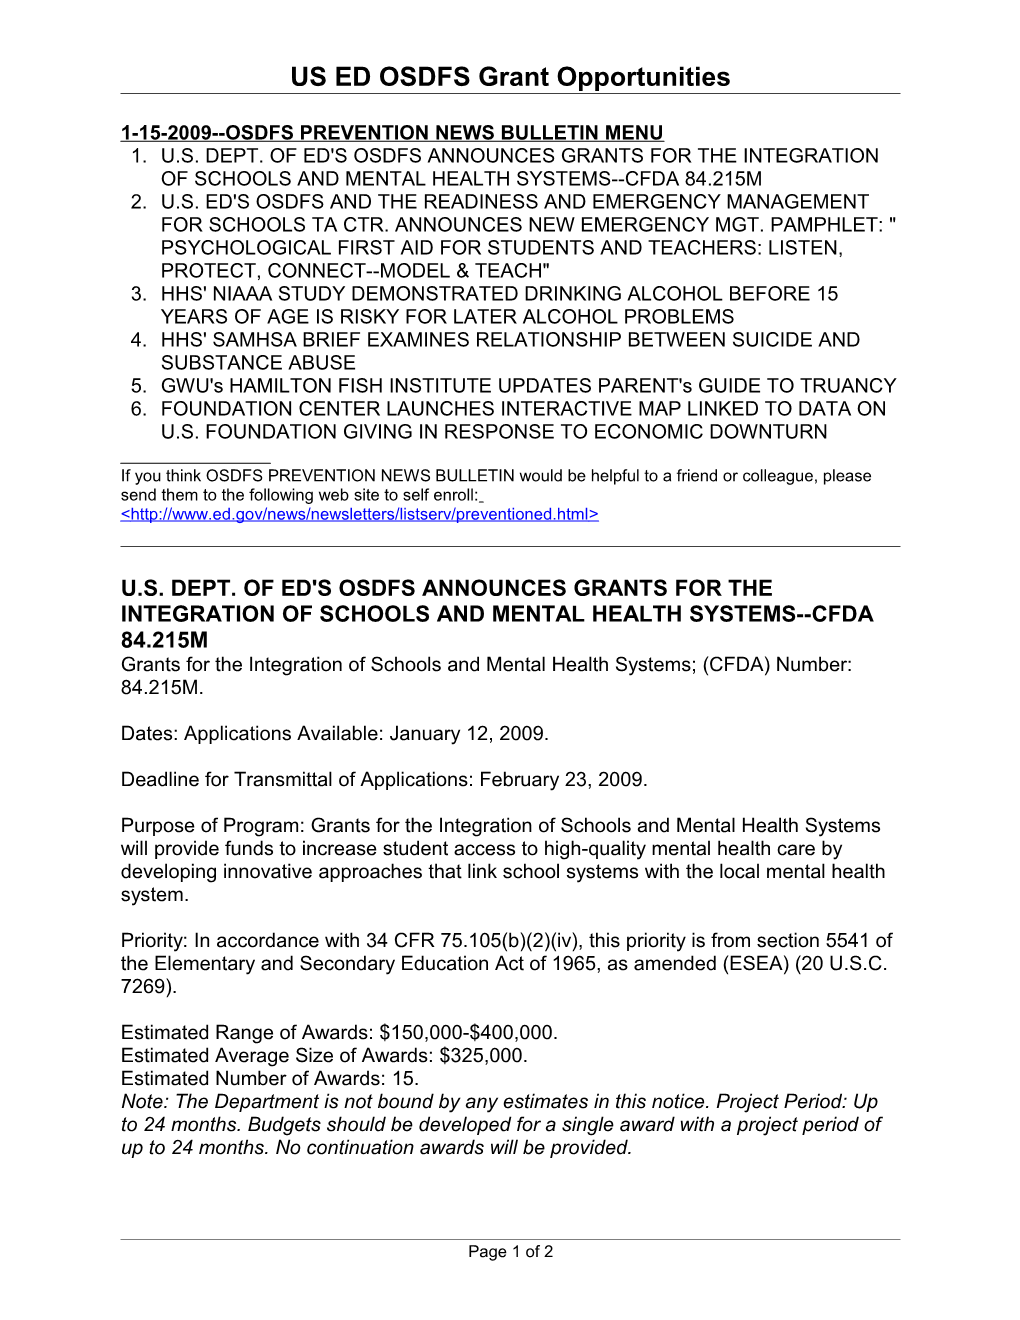 1-08-2009 Osdfs Prevention News Bulletin